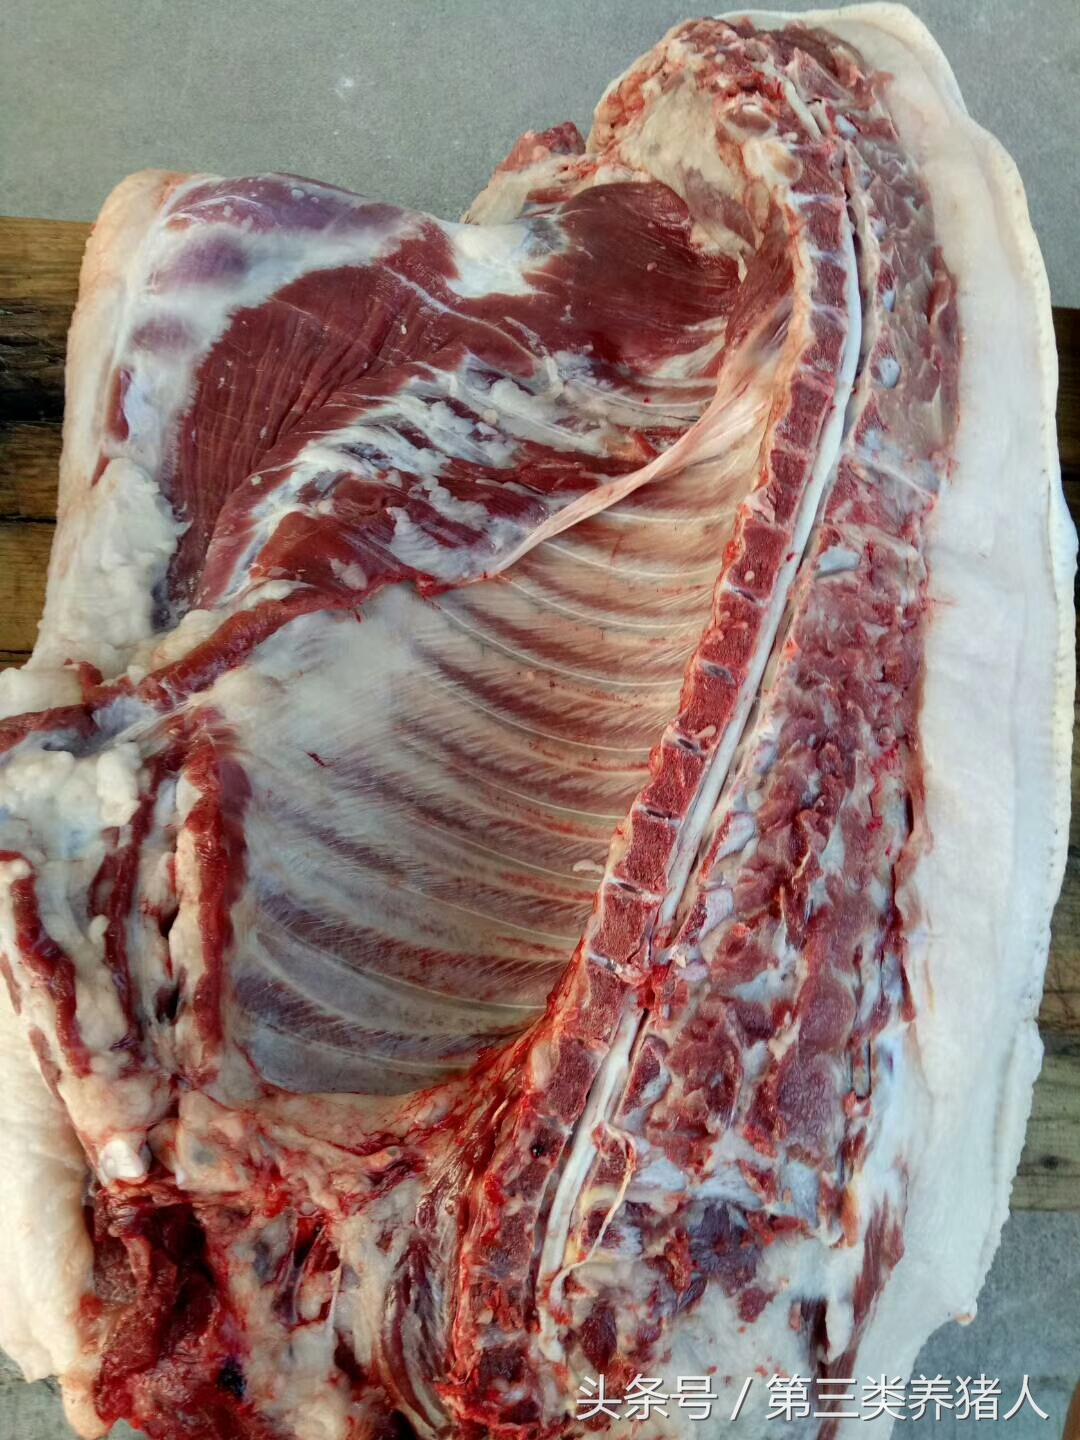 这才是真正的土猪肉,肉色深红,30元一斤